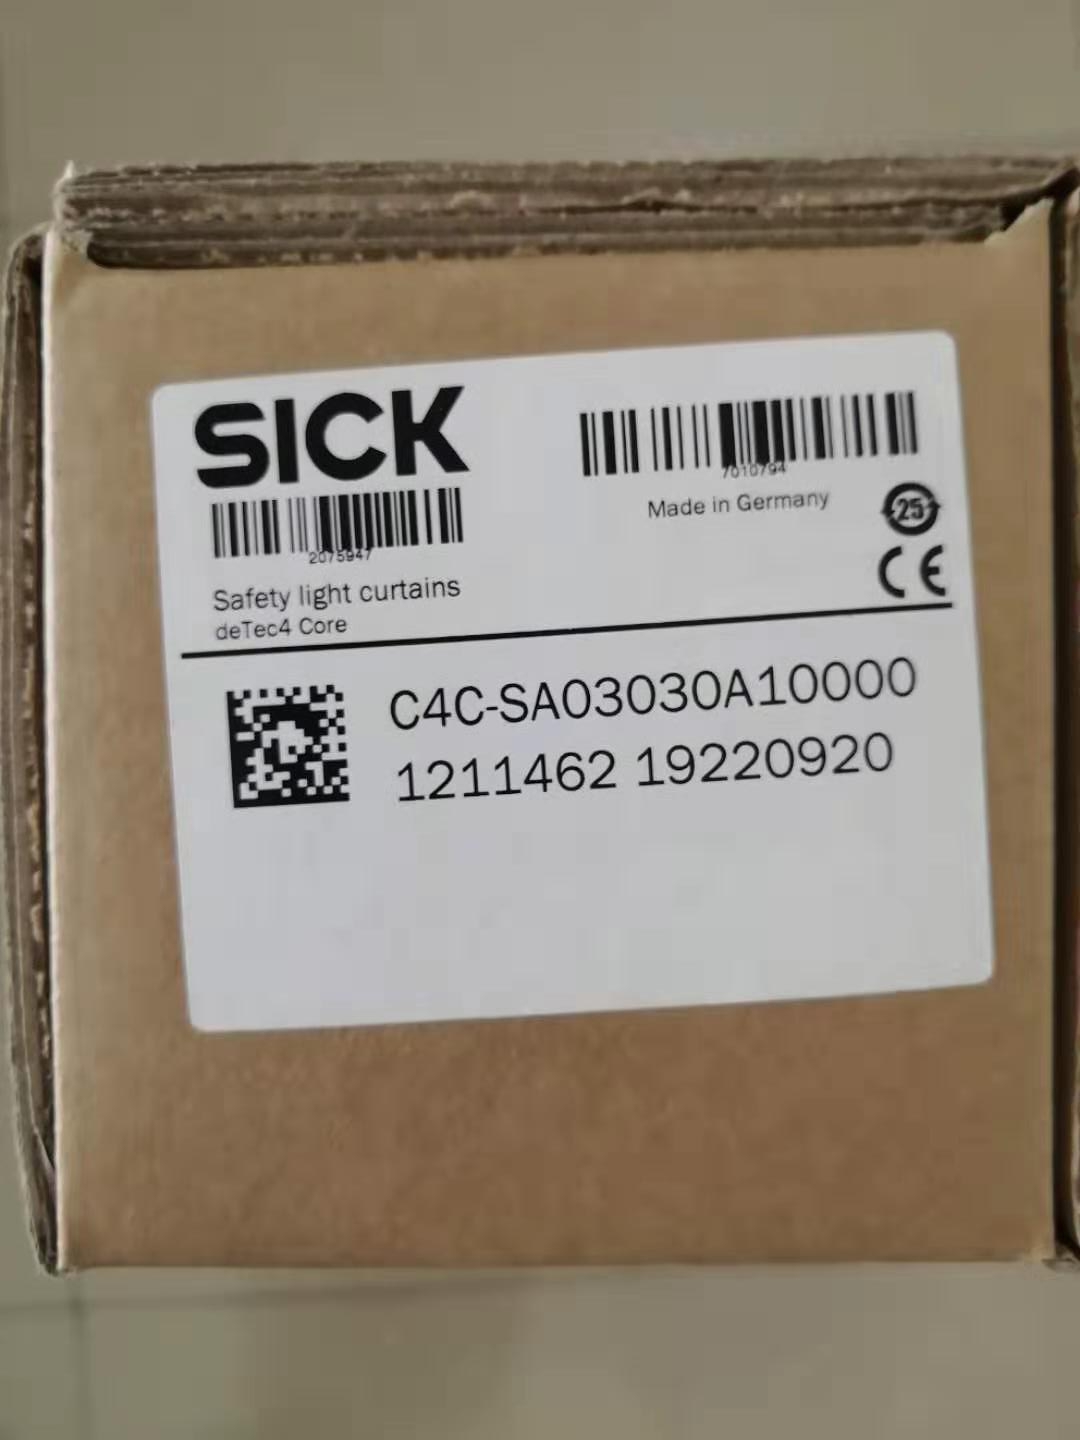 西克SICK安全光栅 C4C-SA03030A10000 传感器尺寸